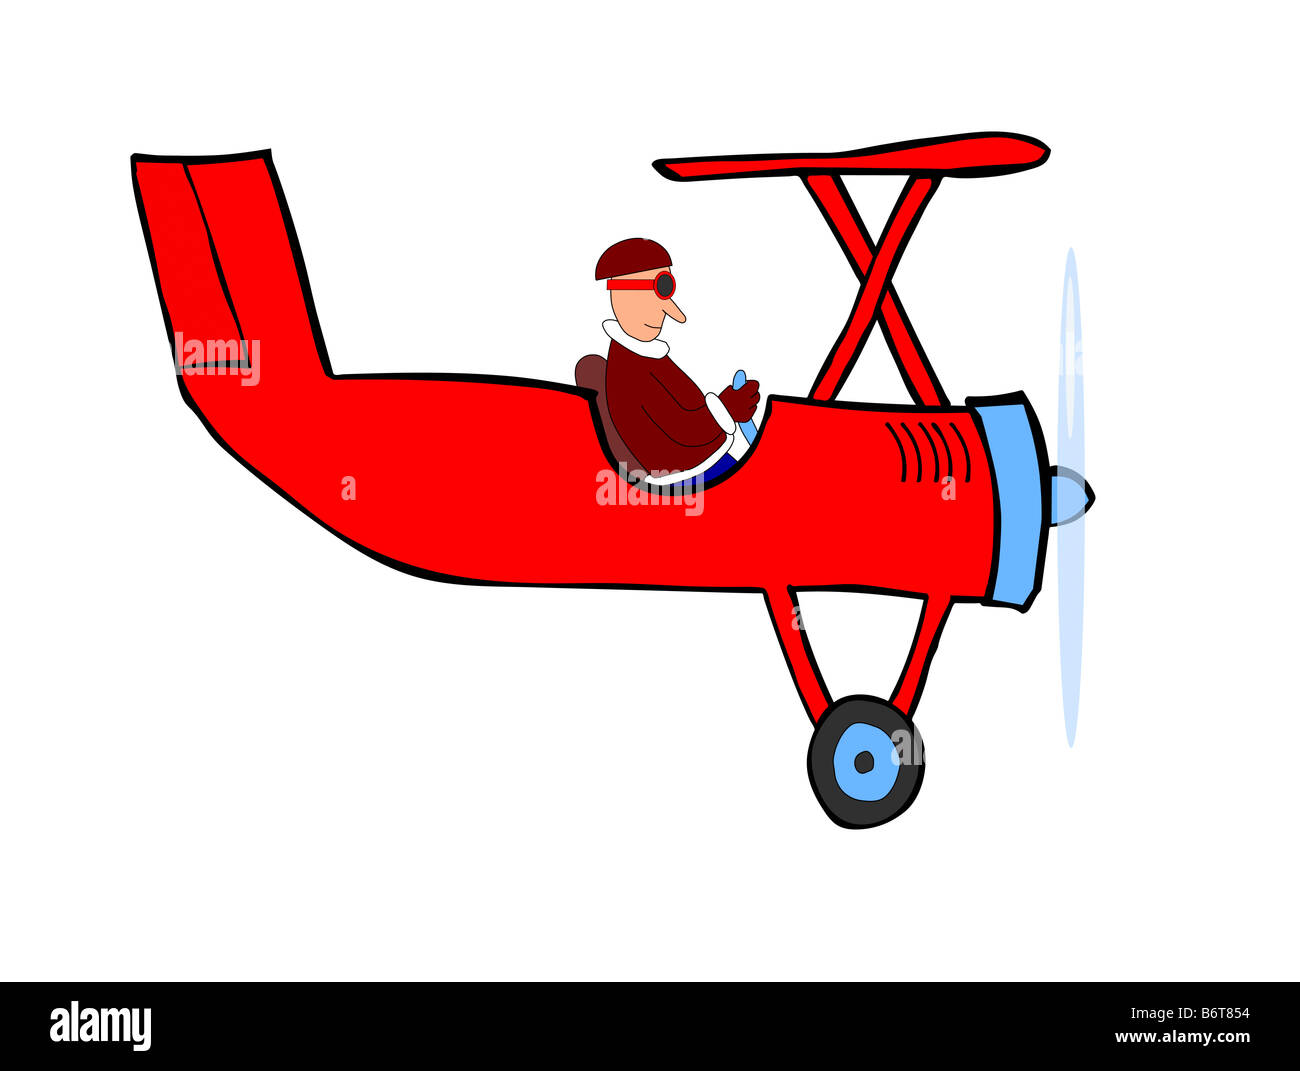 Illustration humoristique de l'avion rouge avec pilote - aviateur et decker rouge Banque D'Images